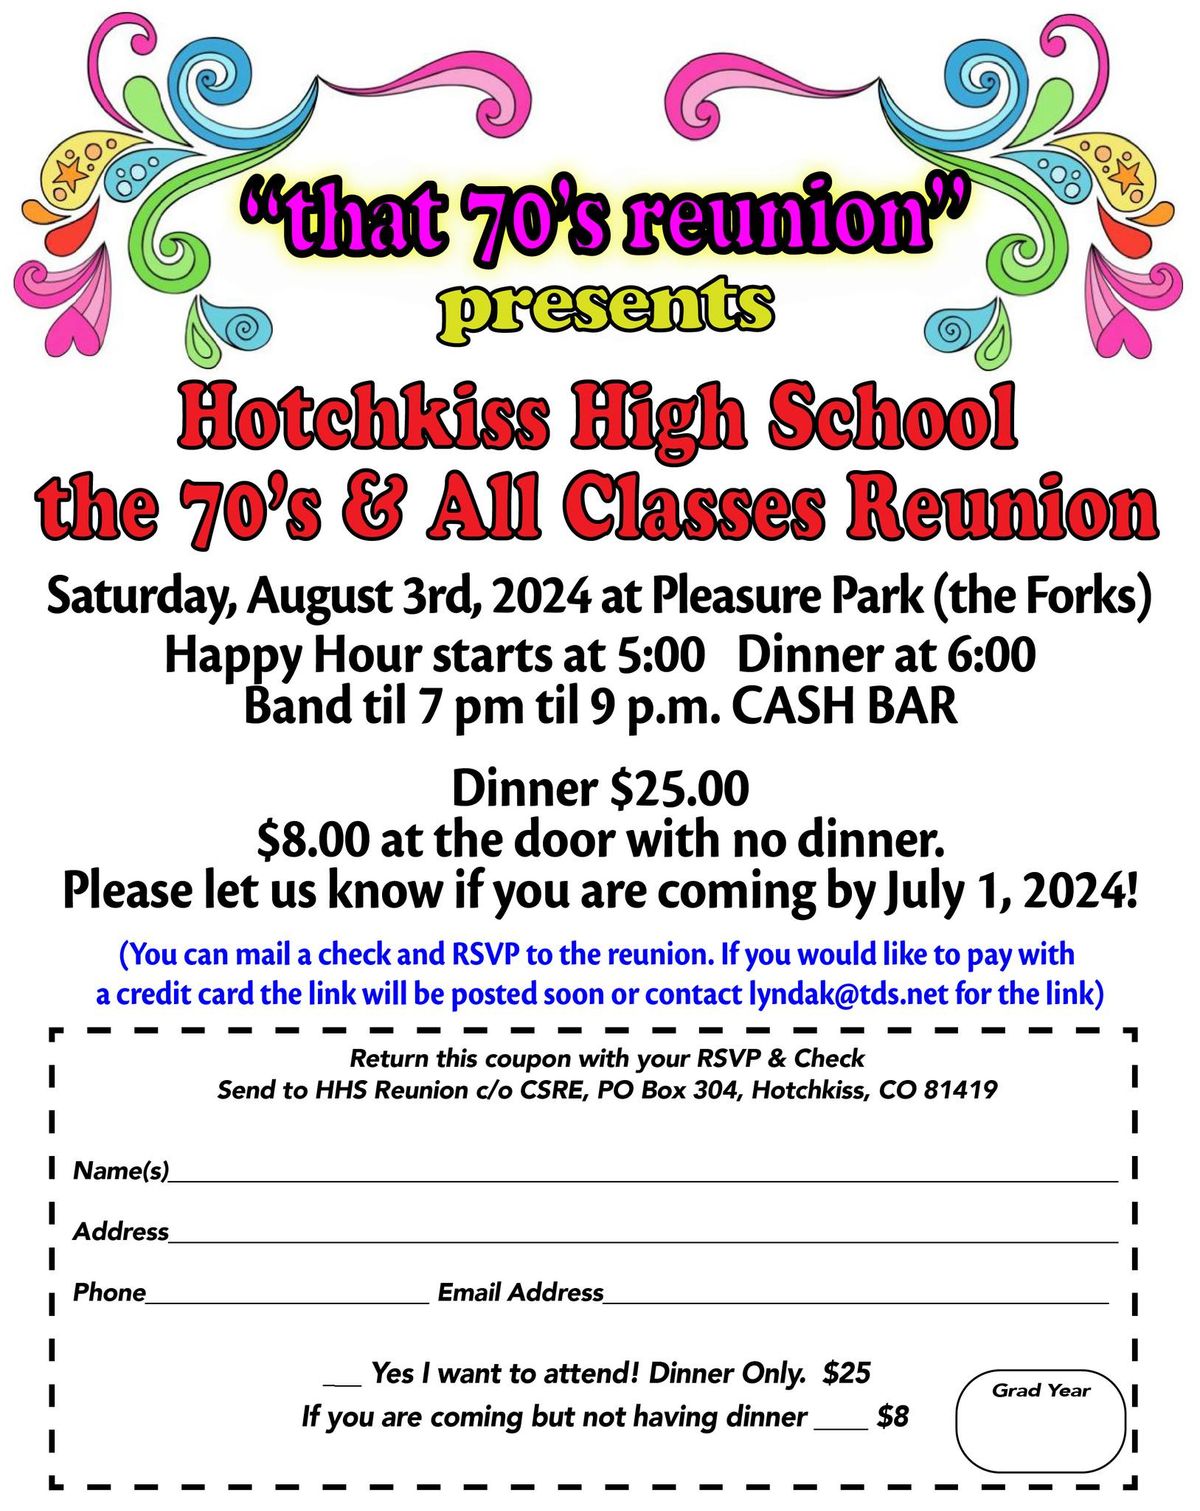 Hotchkiss High School "that 70's Reunion" & All Class Reunion